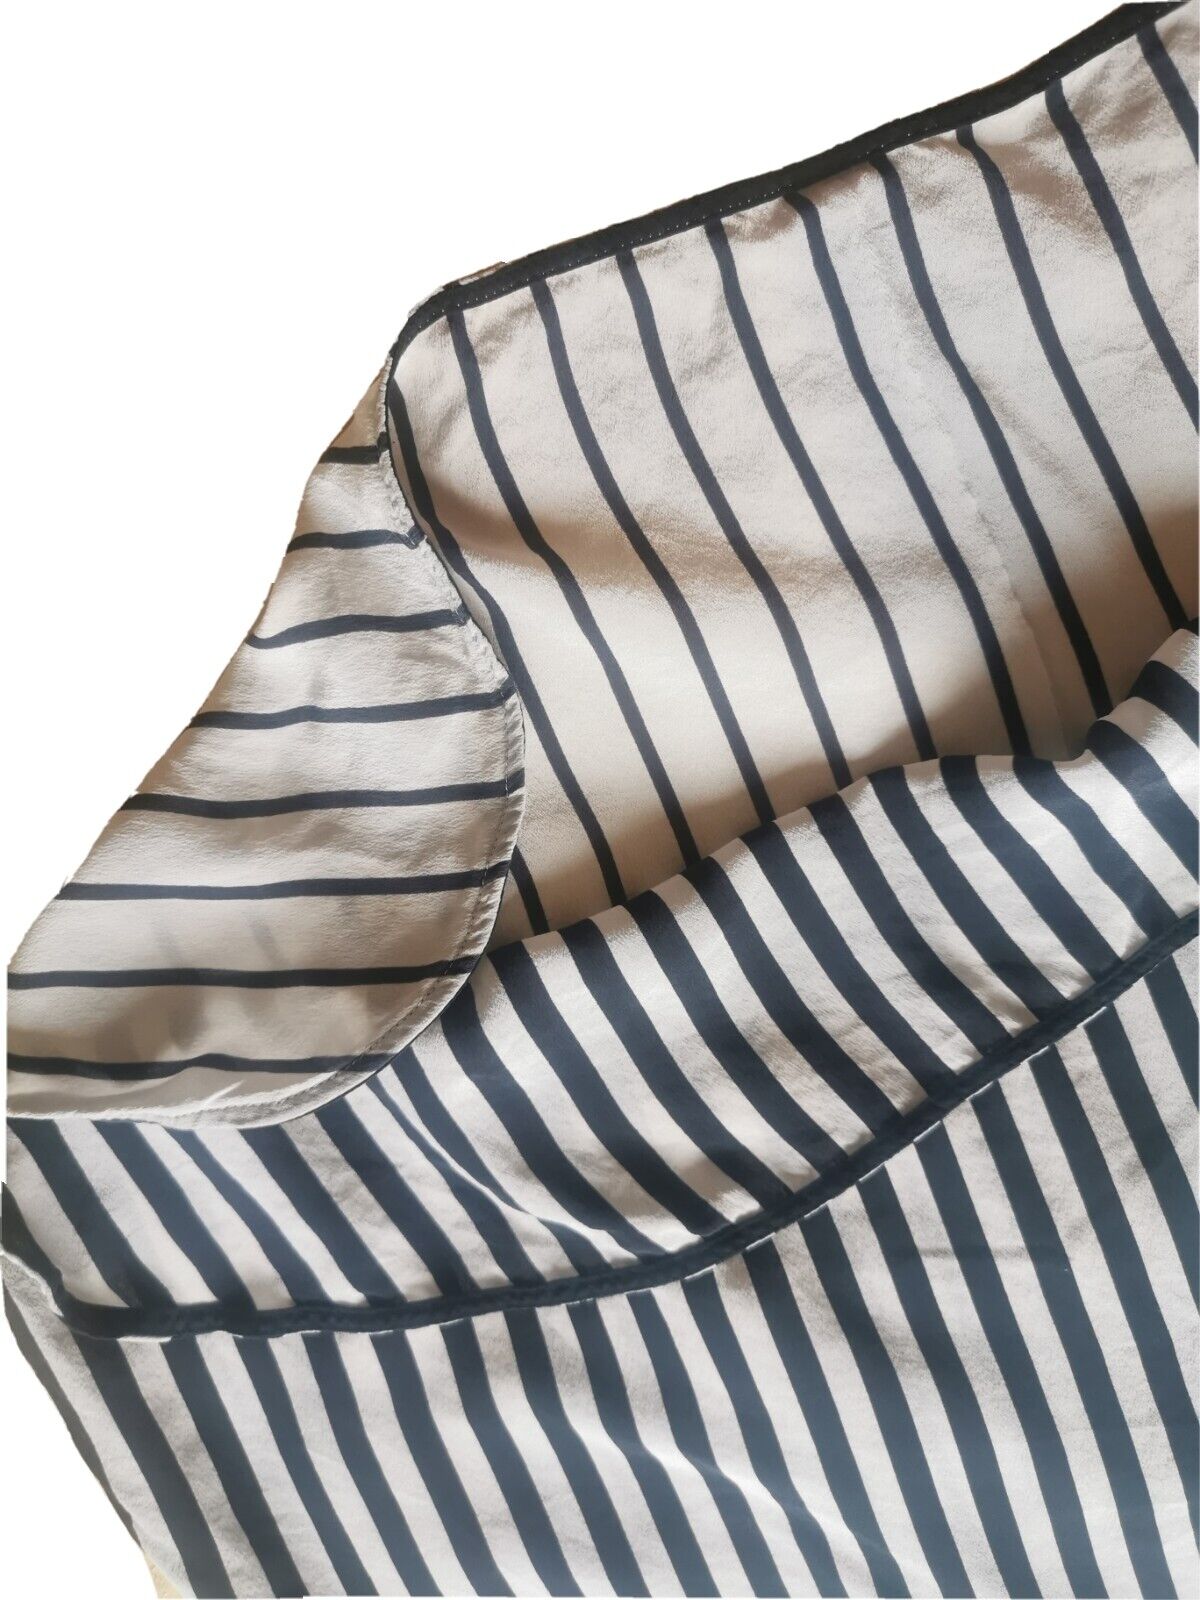 Max & Co Stripe Silk Top Size M-L - image 13